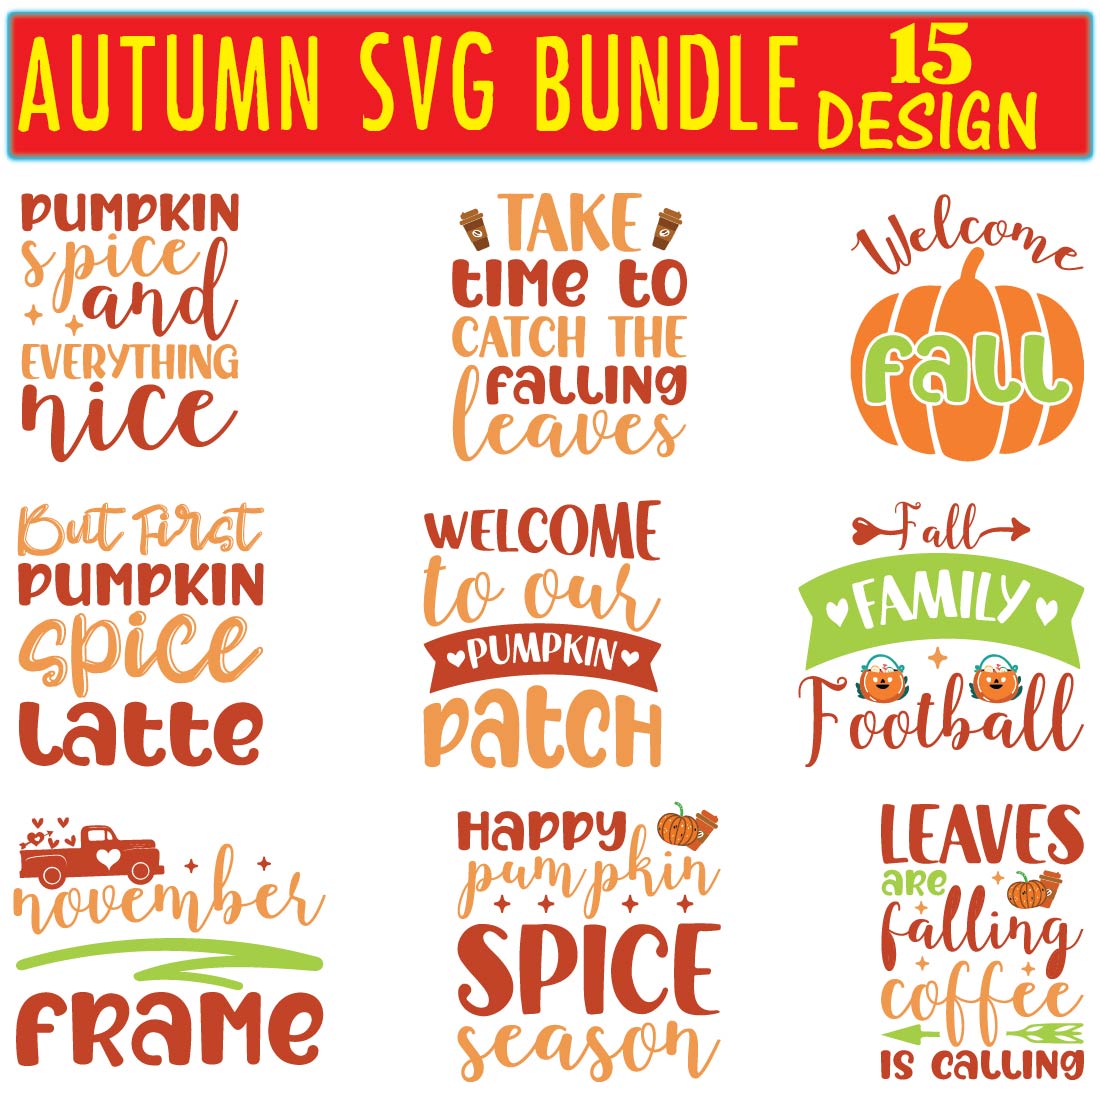 Autumn SVG Bundle preview image.